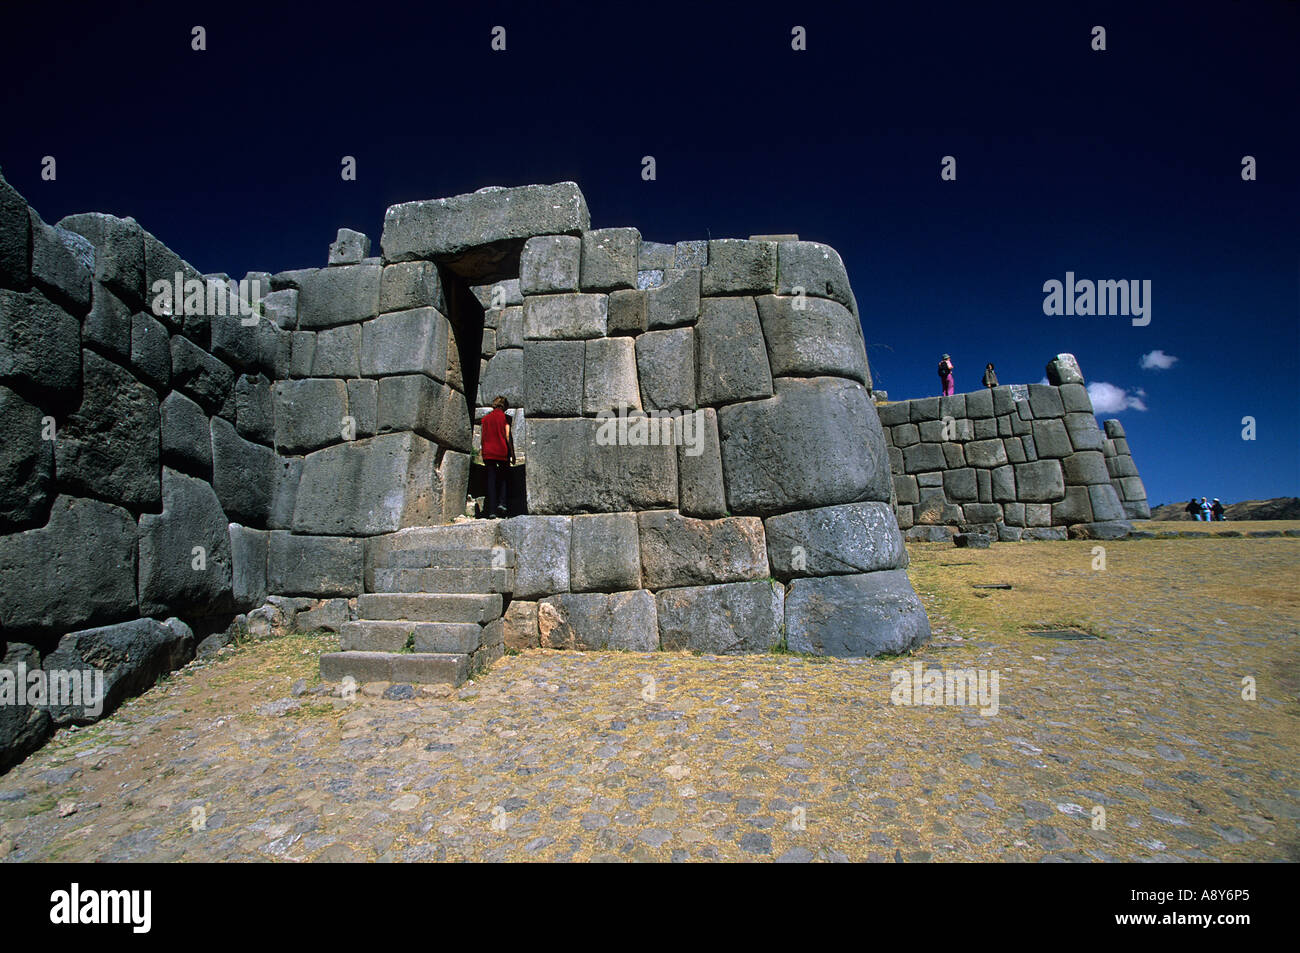 Archäologische Stätte von Sacsayhuaman (Cusco - Peru). Site Archéologique de Sacsayhuaman (Cuzco - Pérou). Stockfoto